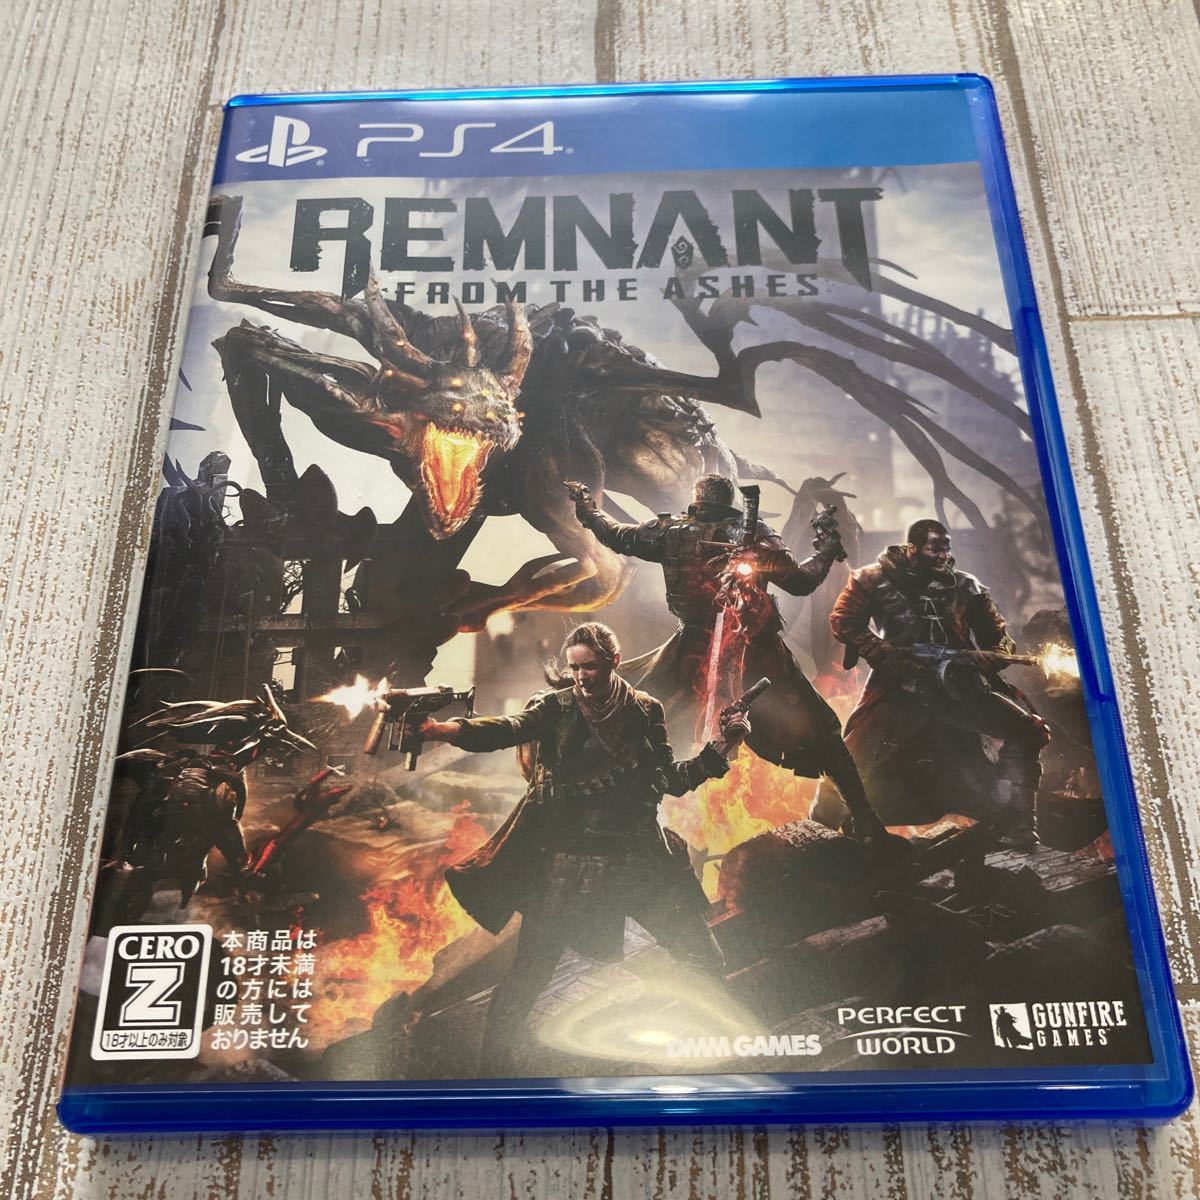 【PS4】レムナント:フロム・ジ・アッシュ REMNANT プレイステーション4 プレステソフト FPS ダークソウル 動作確認済